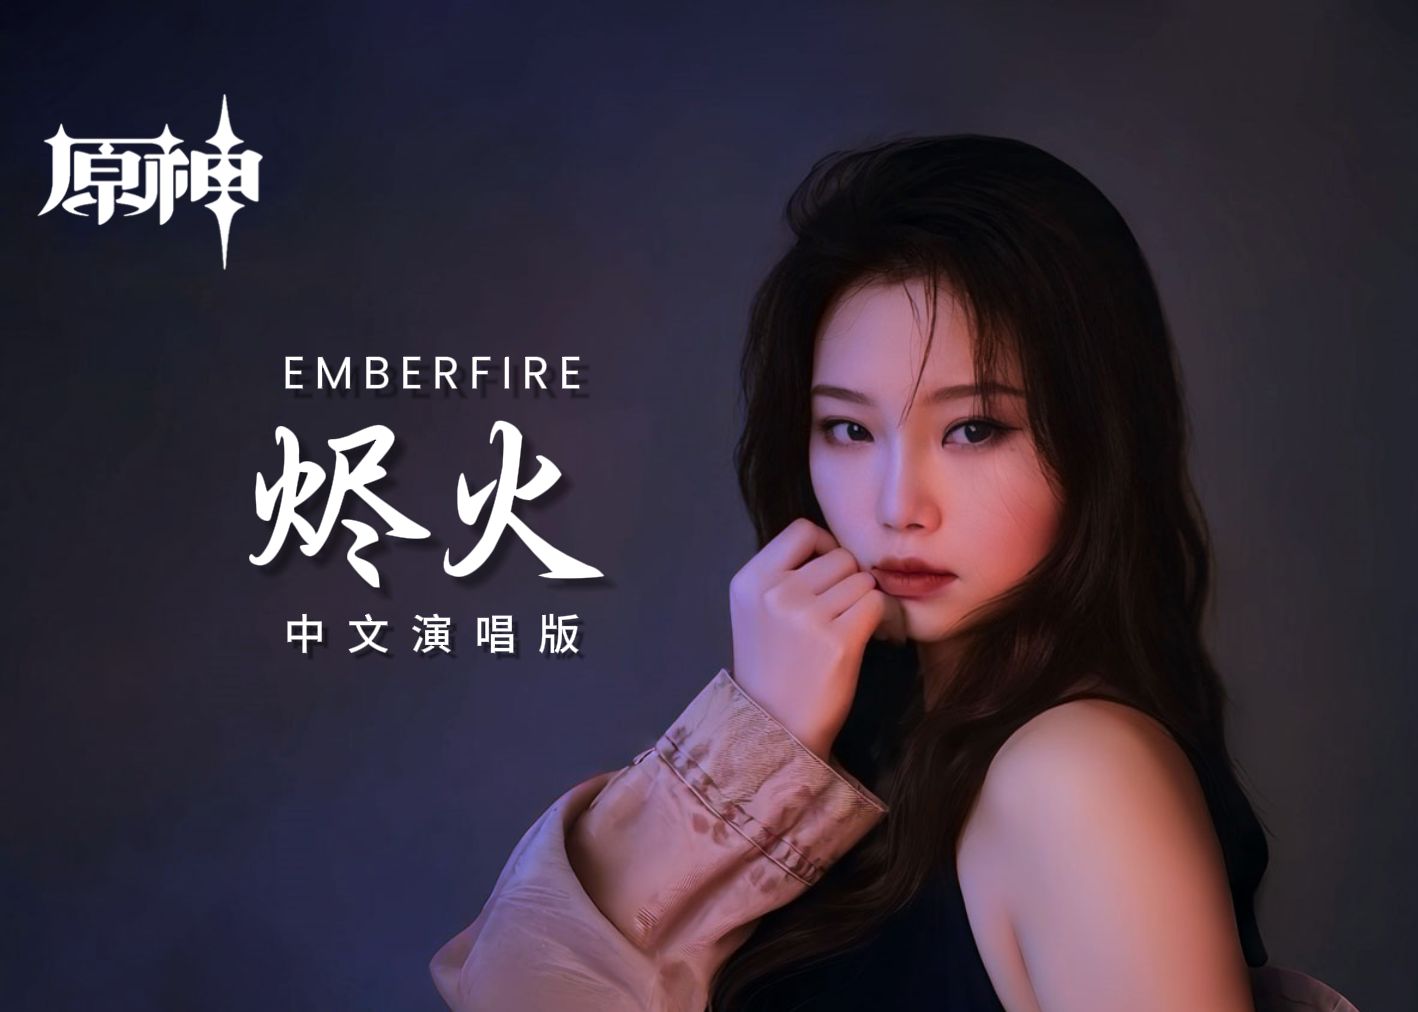 「烬火Emberfire」(中文版)——《原神》动画短片「烬中歌」插曲